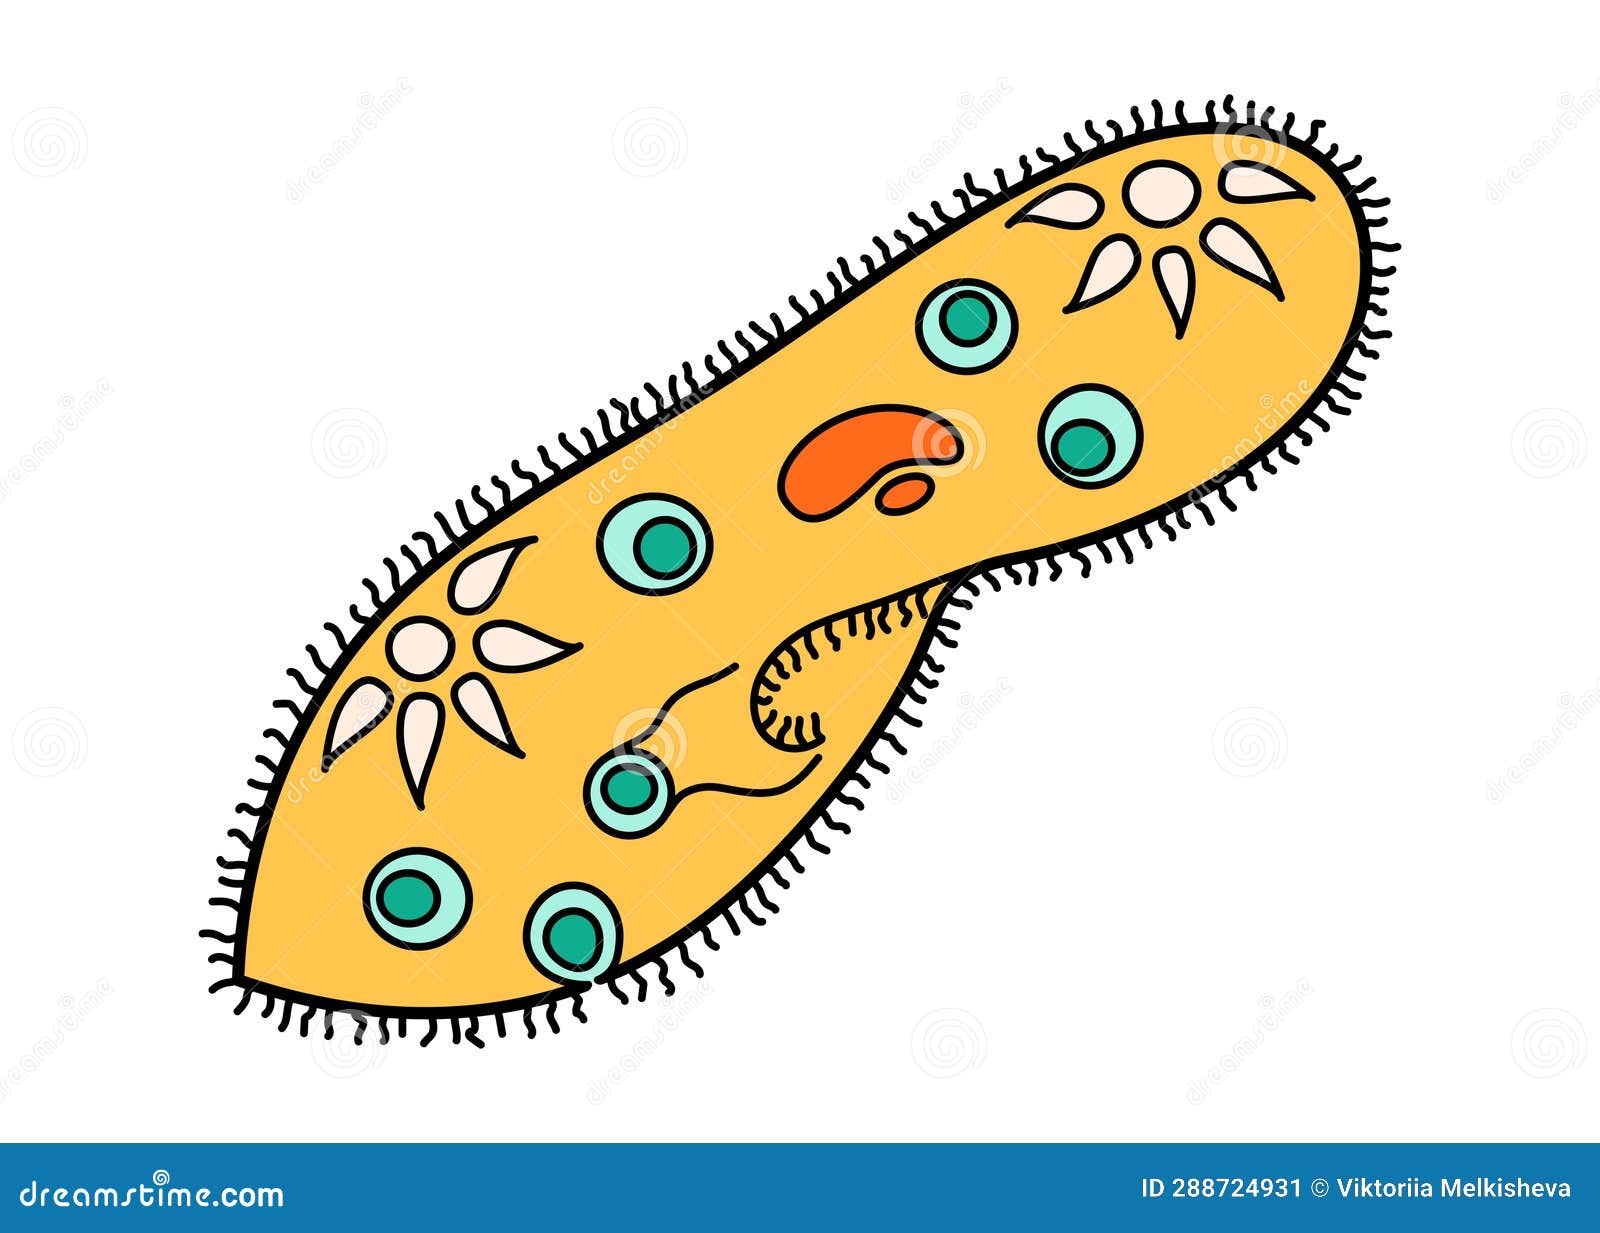 paramecium caudatum proteus science icon with nucleus, vacuole, contractile. biology education laboratory cartoon